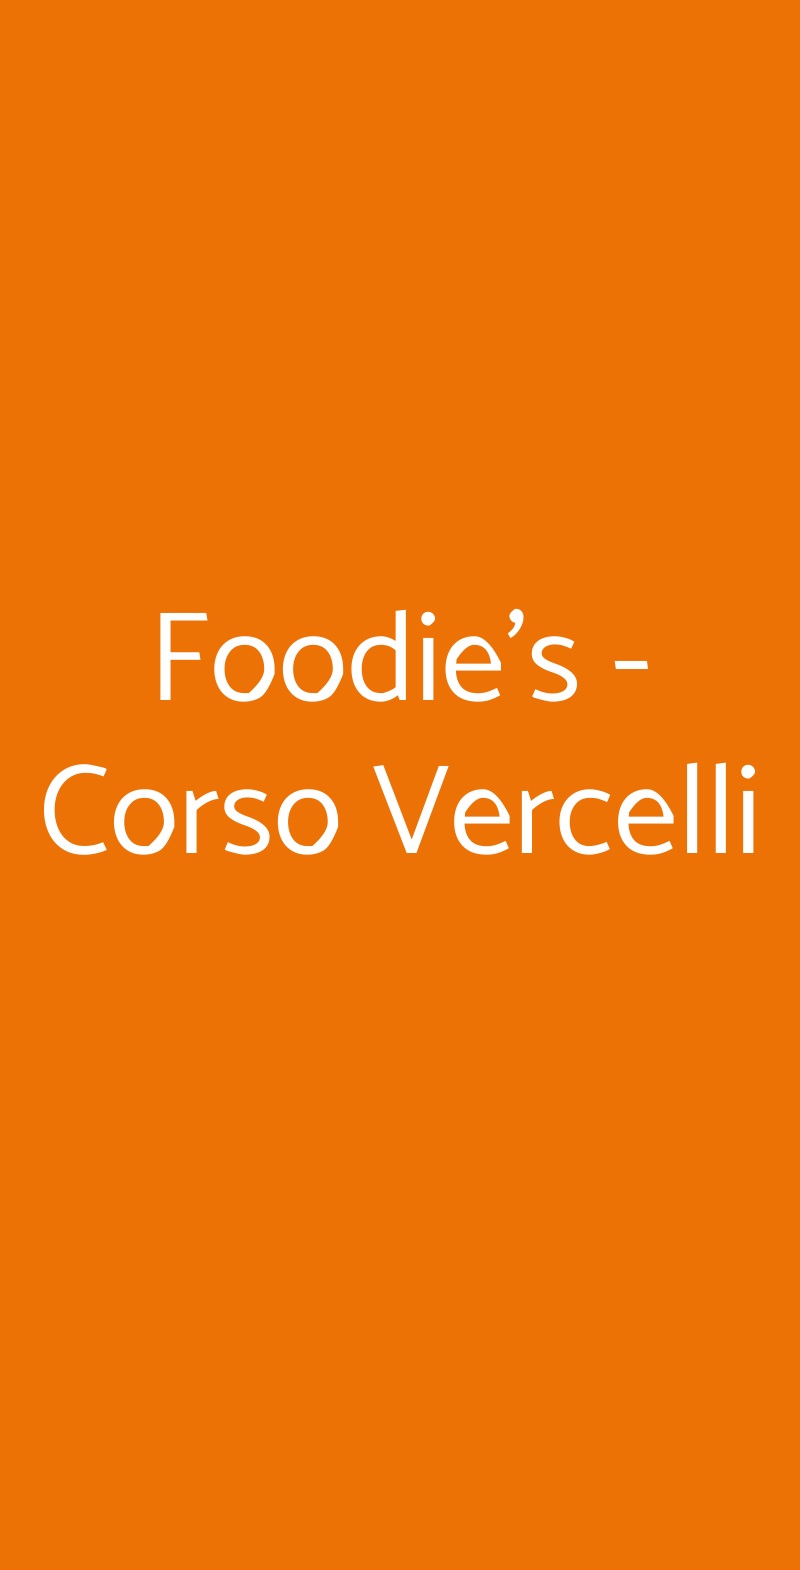 Foodie's - Corso Vercelli Milano menù 1 pagina